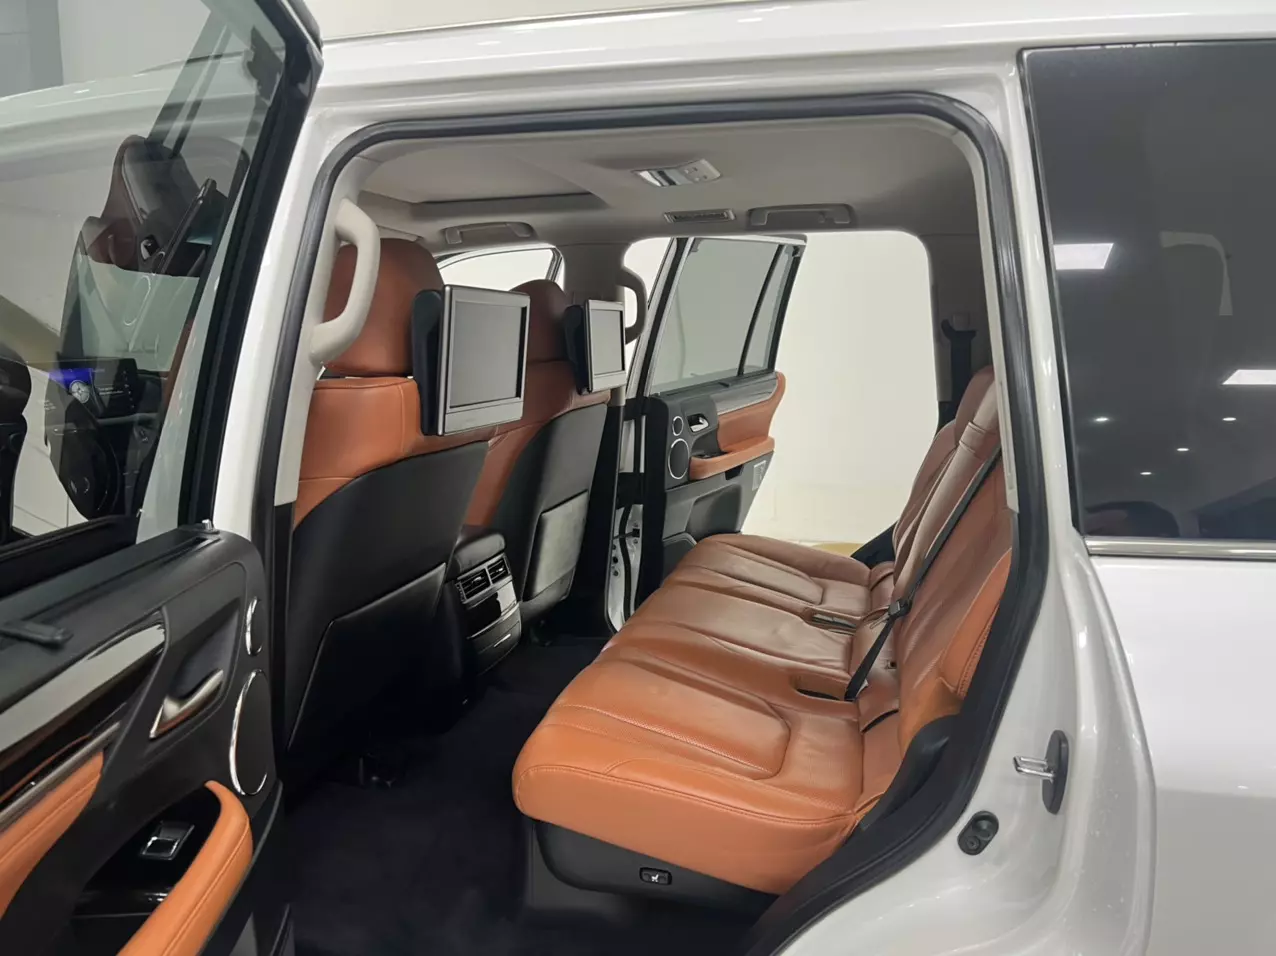 Bán Lexus LX570 Trung Đông sản xuất năm 2016 màu Trắng nội thất Nâu da bò, xe đăng ký tên cá nhân đi hơn 10v Km-2